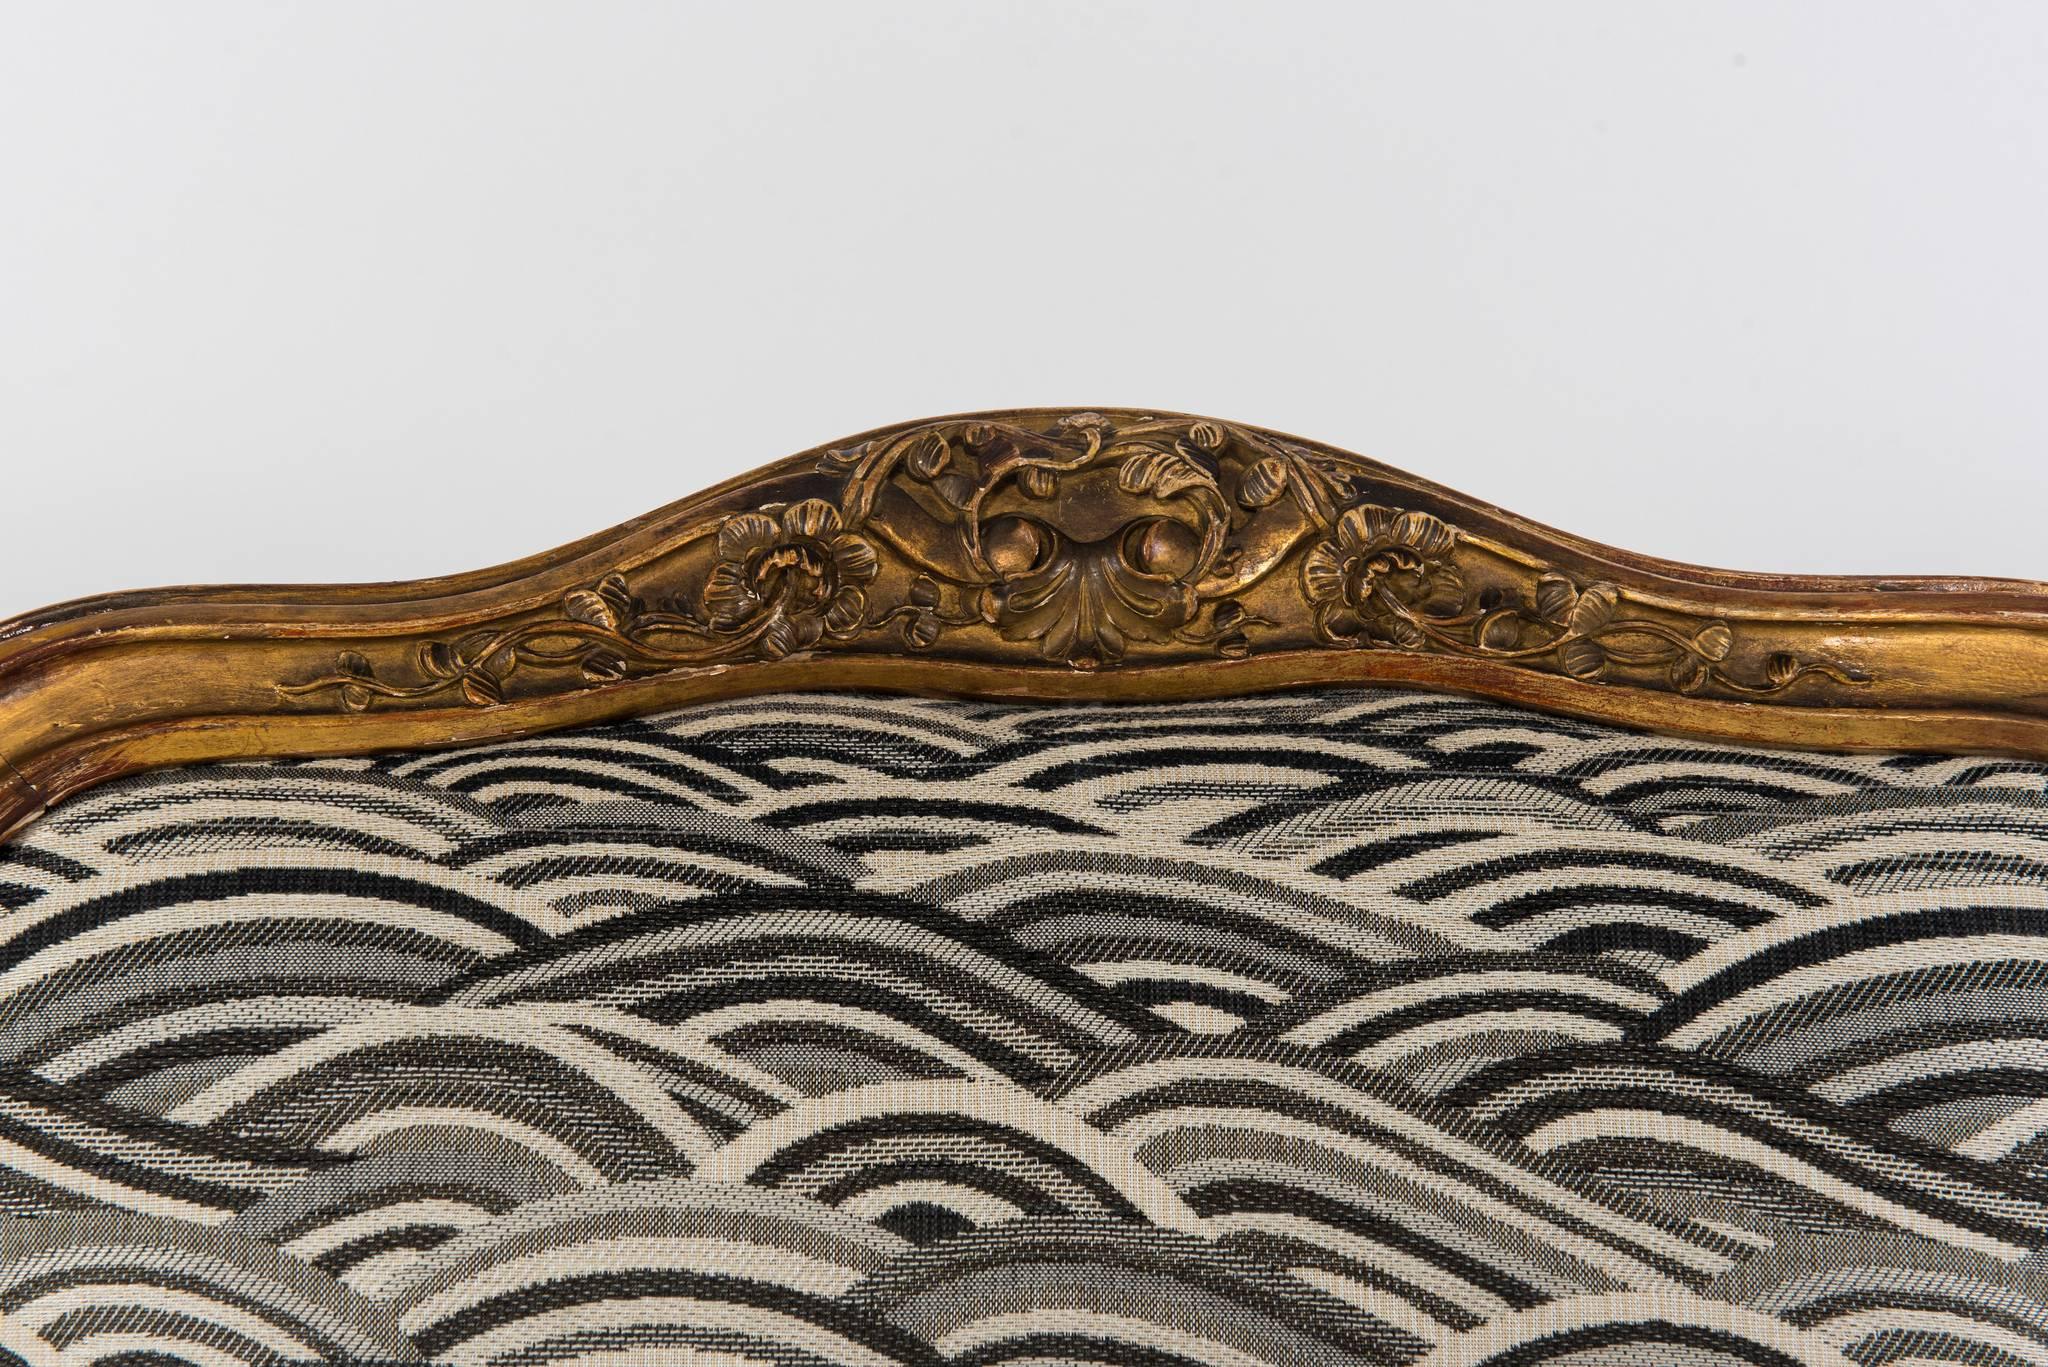 Fauteuil en bois doré de style Louis XV du 19ème siècle, nouvellement tapissé d'un tissu à vagues noir, blanc et gris.